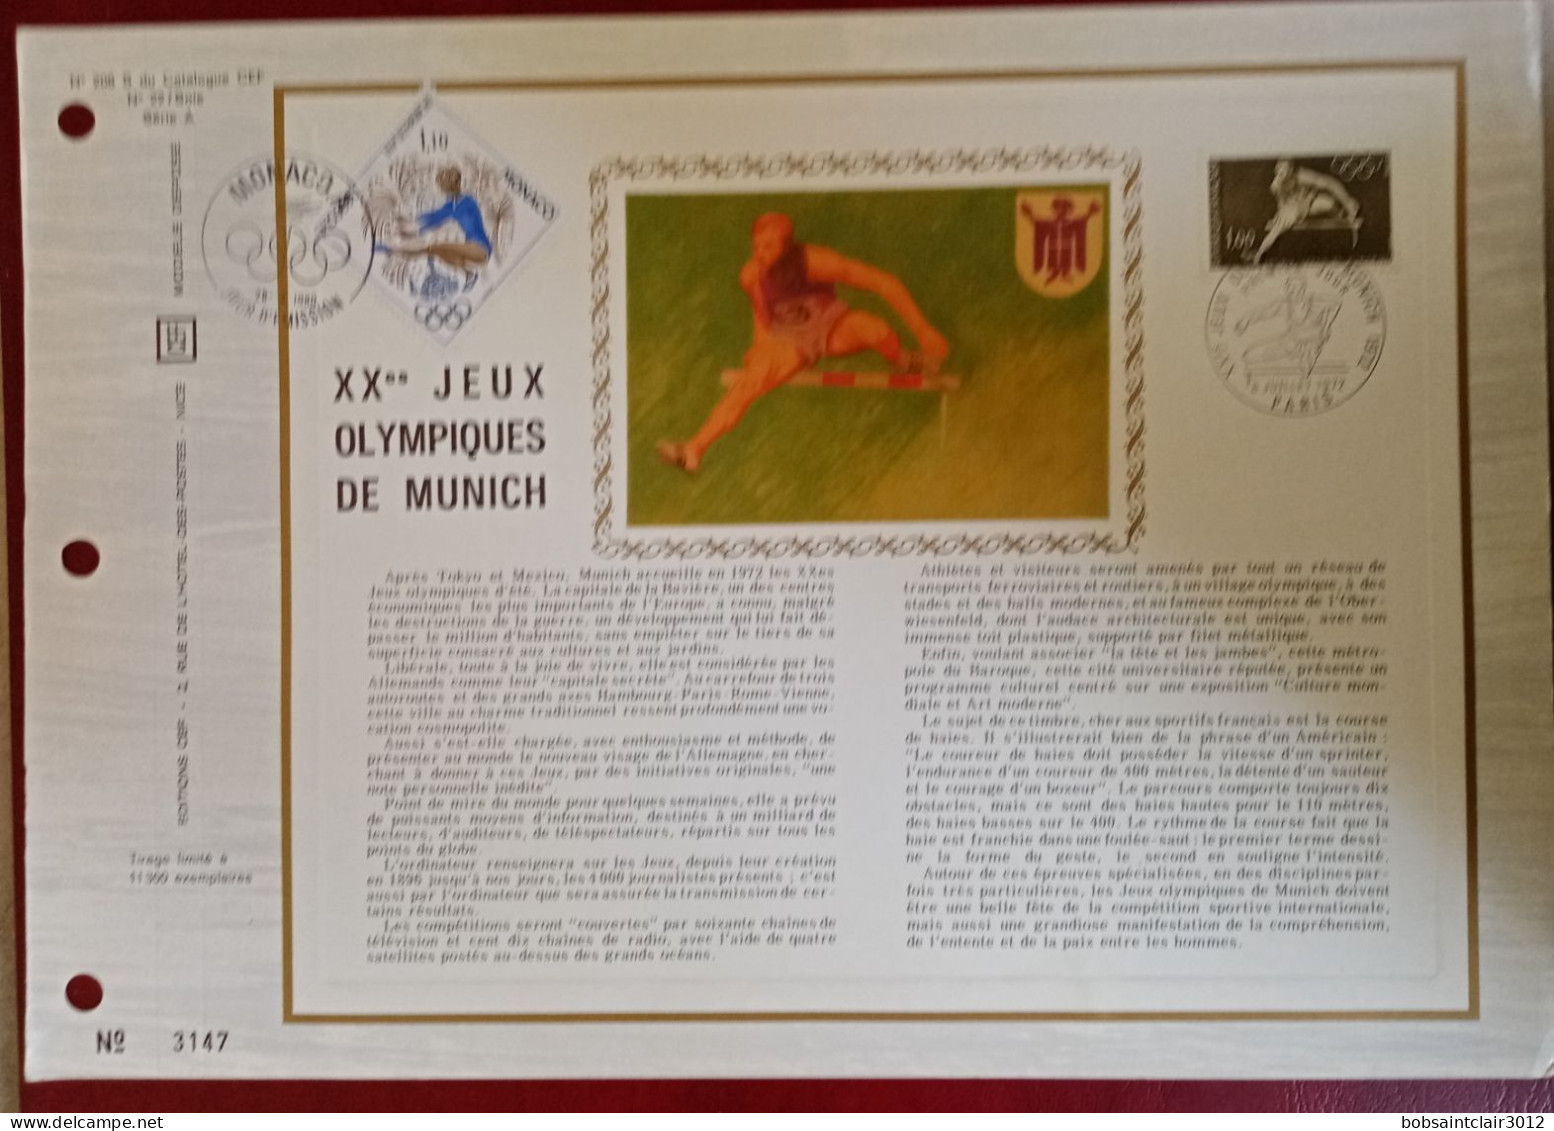 Album de timbres Monaco SAFE Dual numéro 2207 avec timbres neuf 1er choix de 1960 à 1972